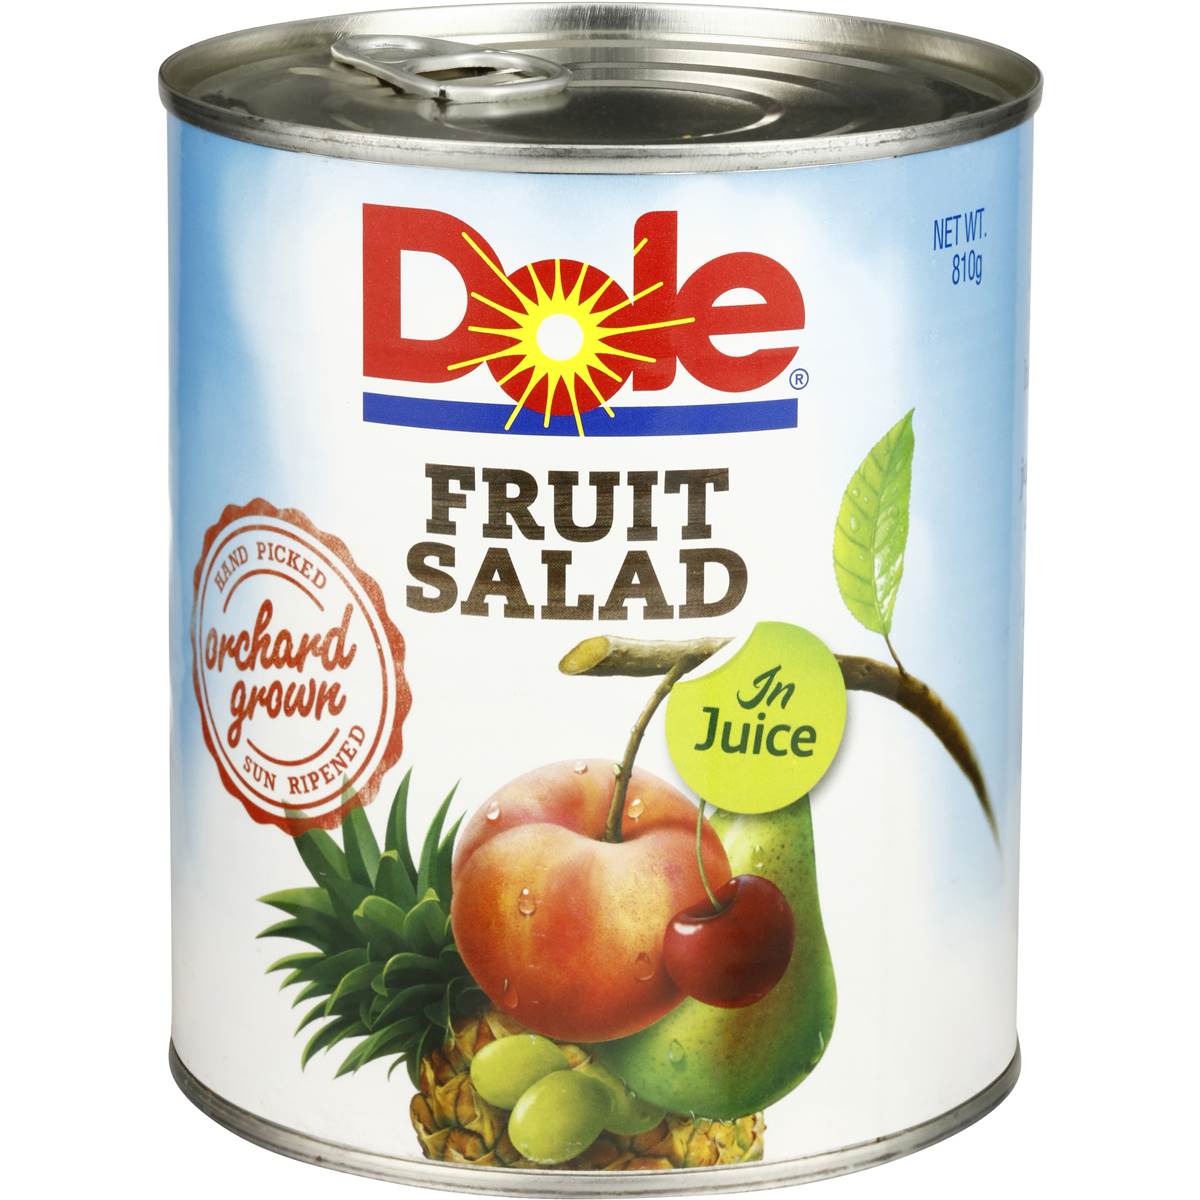 Dole Fruit Salad In Juice 